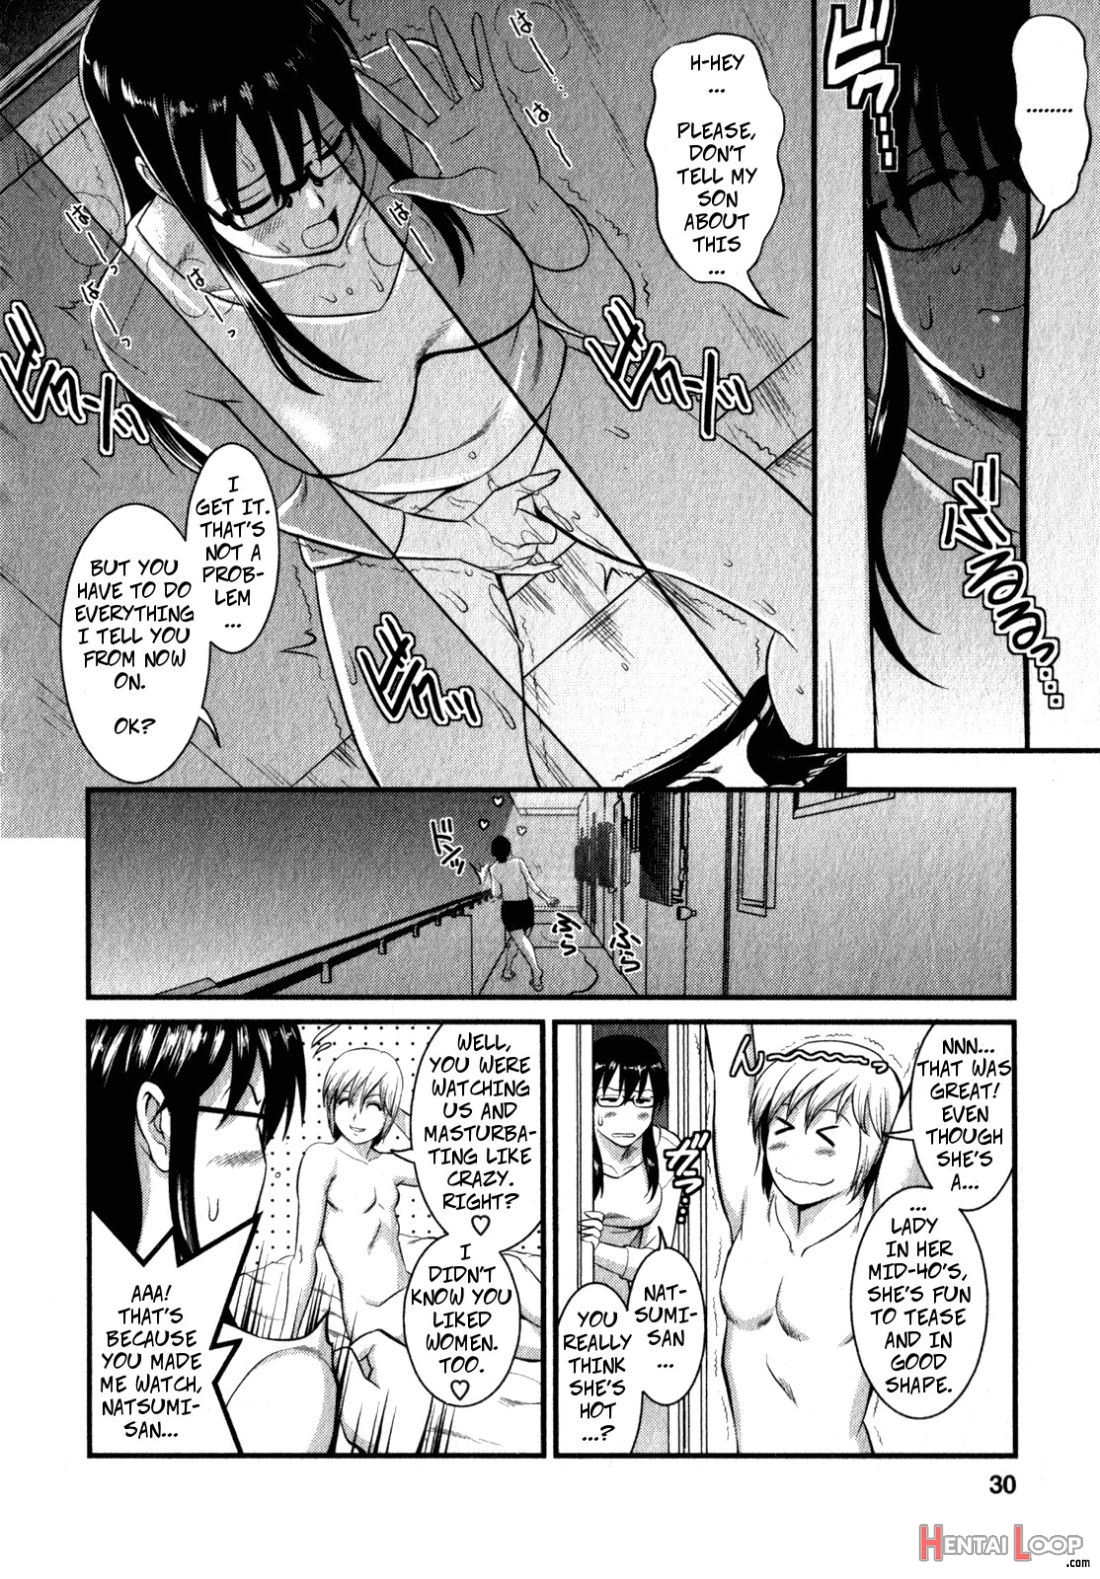 Shizuko-san’s Story page 9